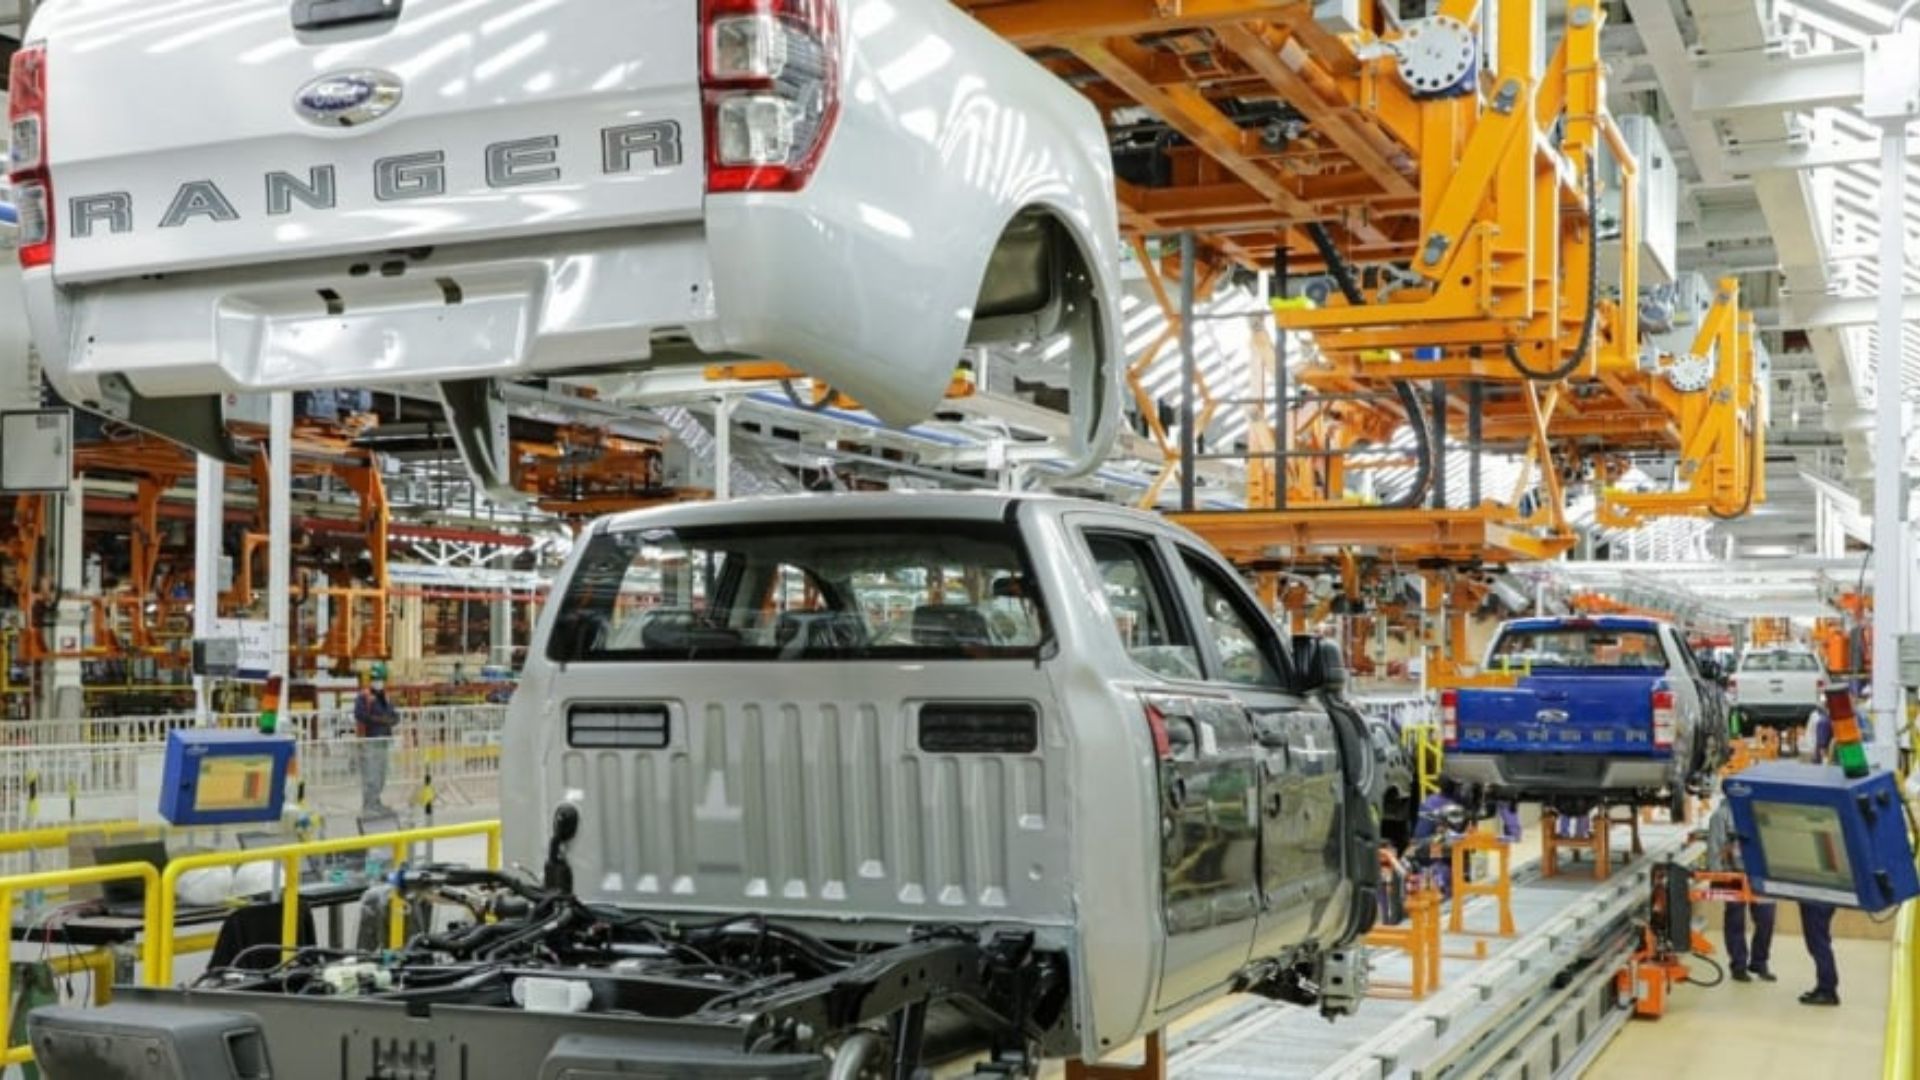 La planta de Ford en Pacheco está experimentando la modernización integral de sus instalaciones y operaciones productivas (Crédito: Prensa Ford Argentina)